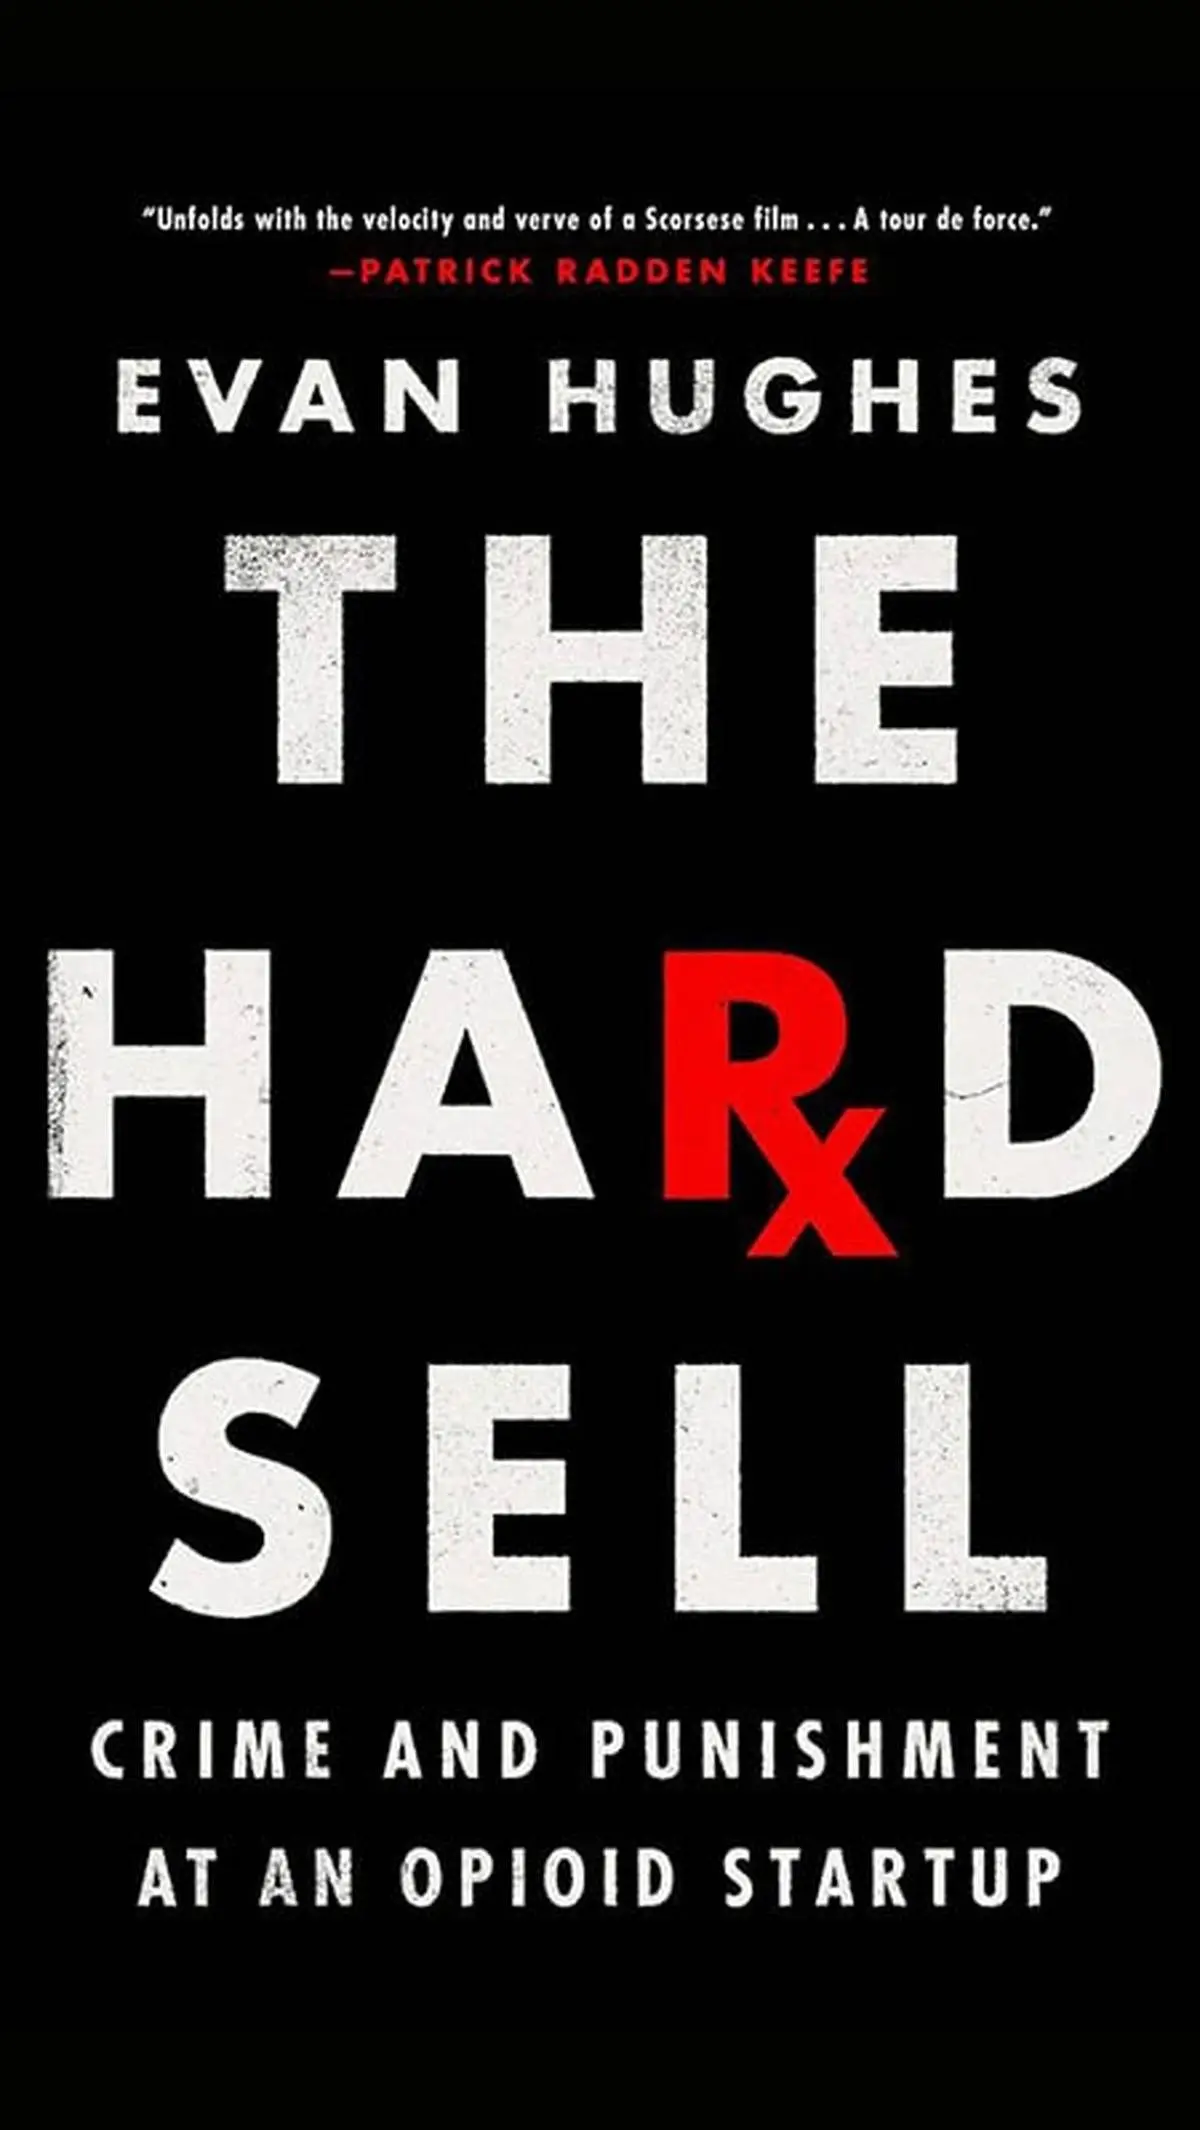 فروش سخت: جنایت و مکافات در یک استارت آپ مواد مخدر